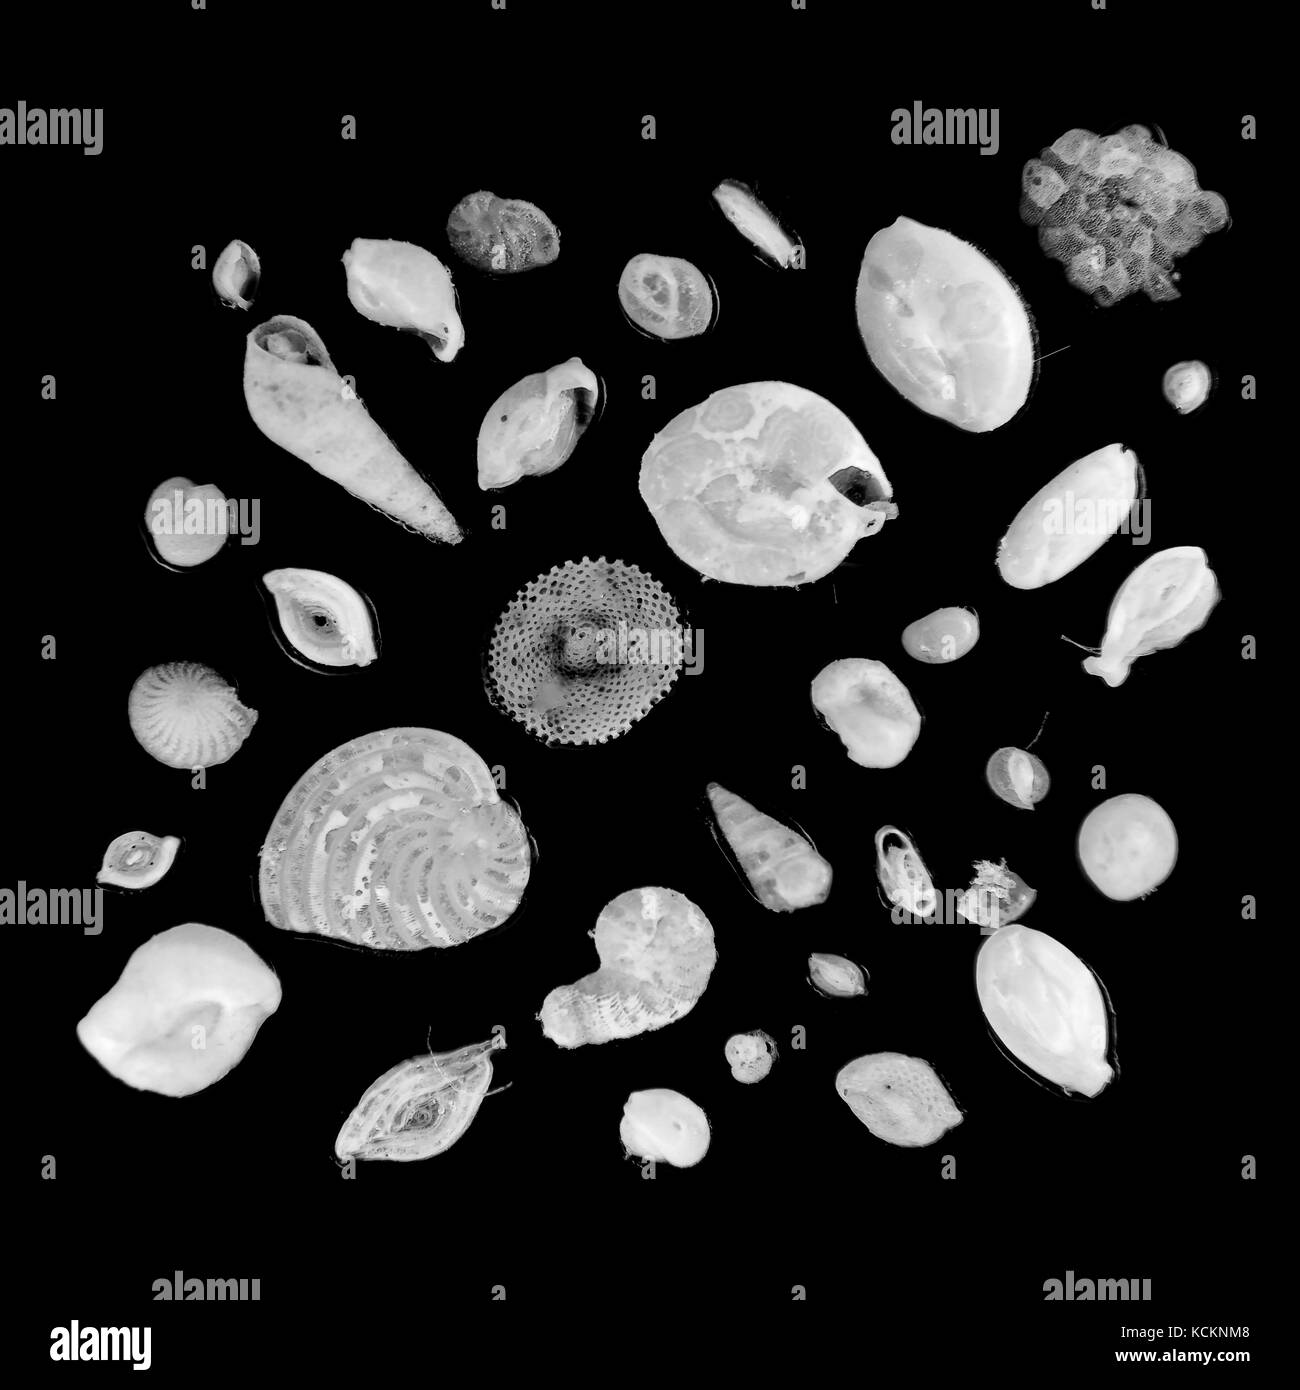 Vetrino da microscopio Foto e Immagini Stock in Bianco e Nero - Alamy